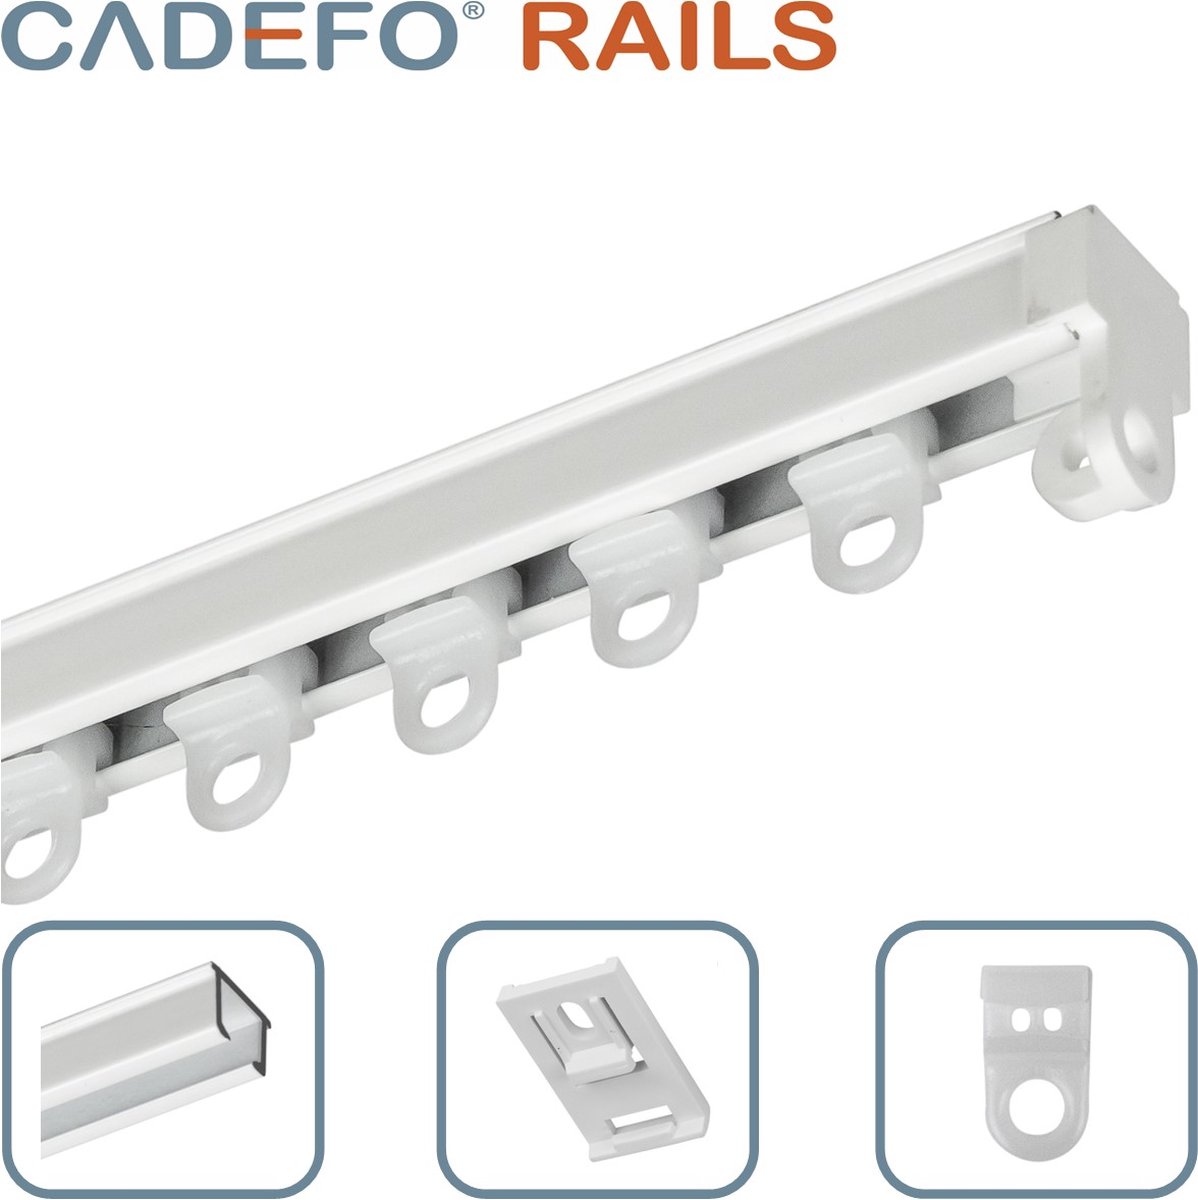 CADEFO RAILS (501 - 550 cm) Gordijnrails - Compleet op maat! - UIT 1 STUK - Leverbaar tot 6 meter - Plafondbevestiging - Lengte 518 cm